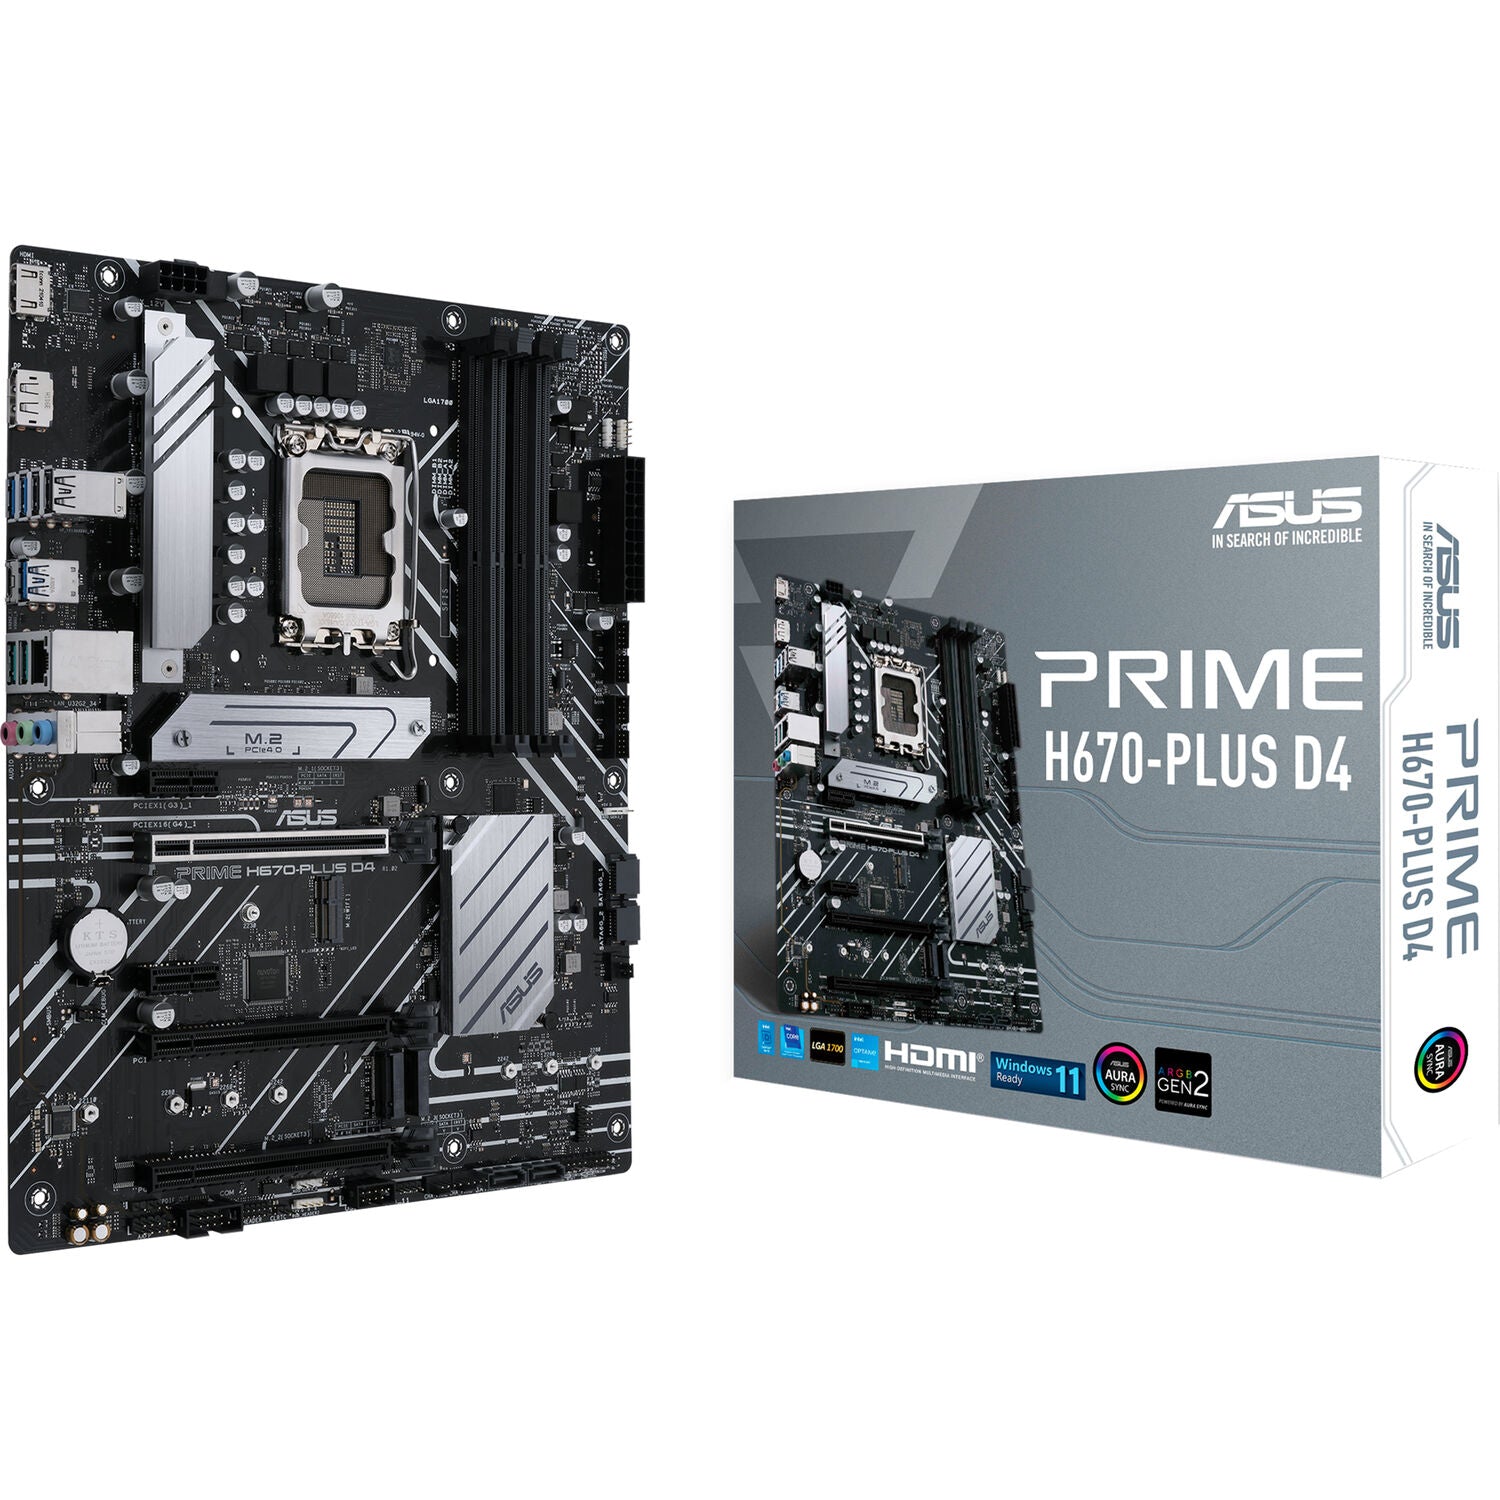 Asus motherboard H670 Prime Plus D4